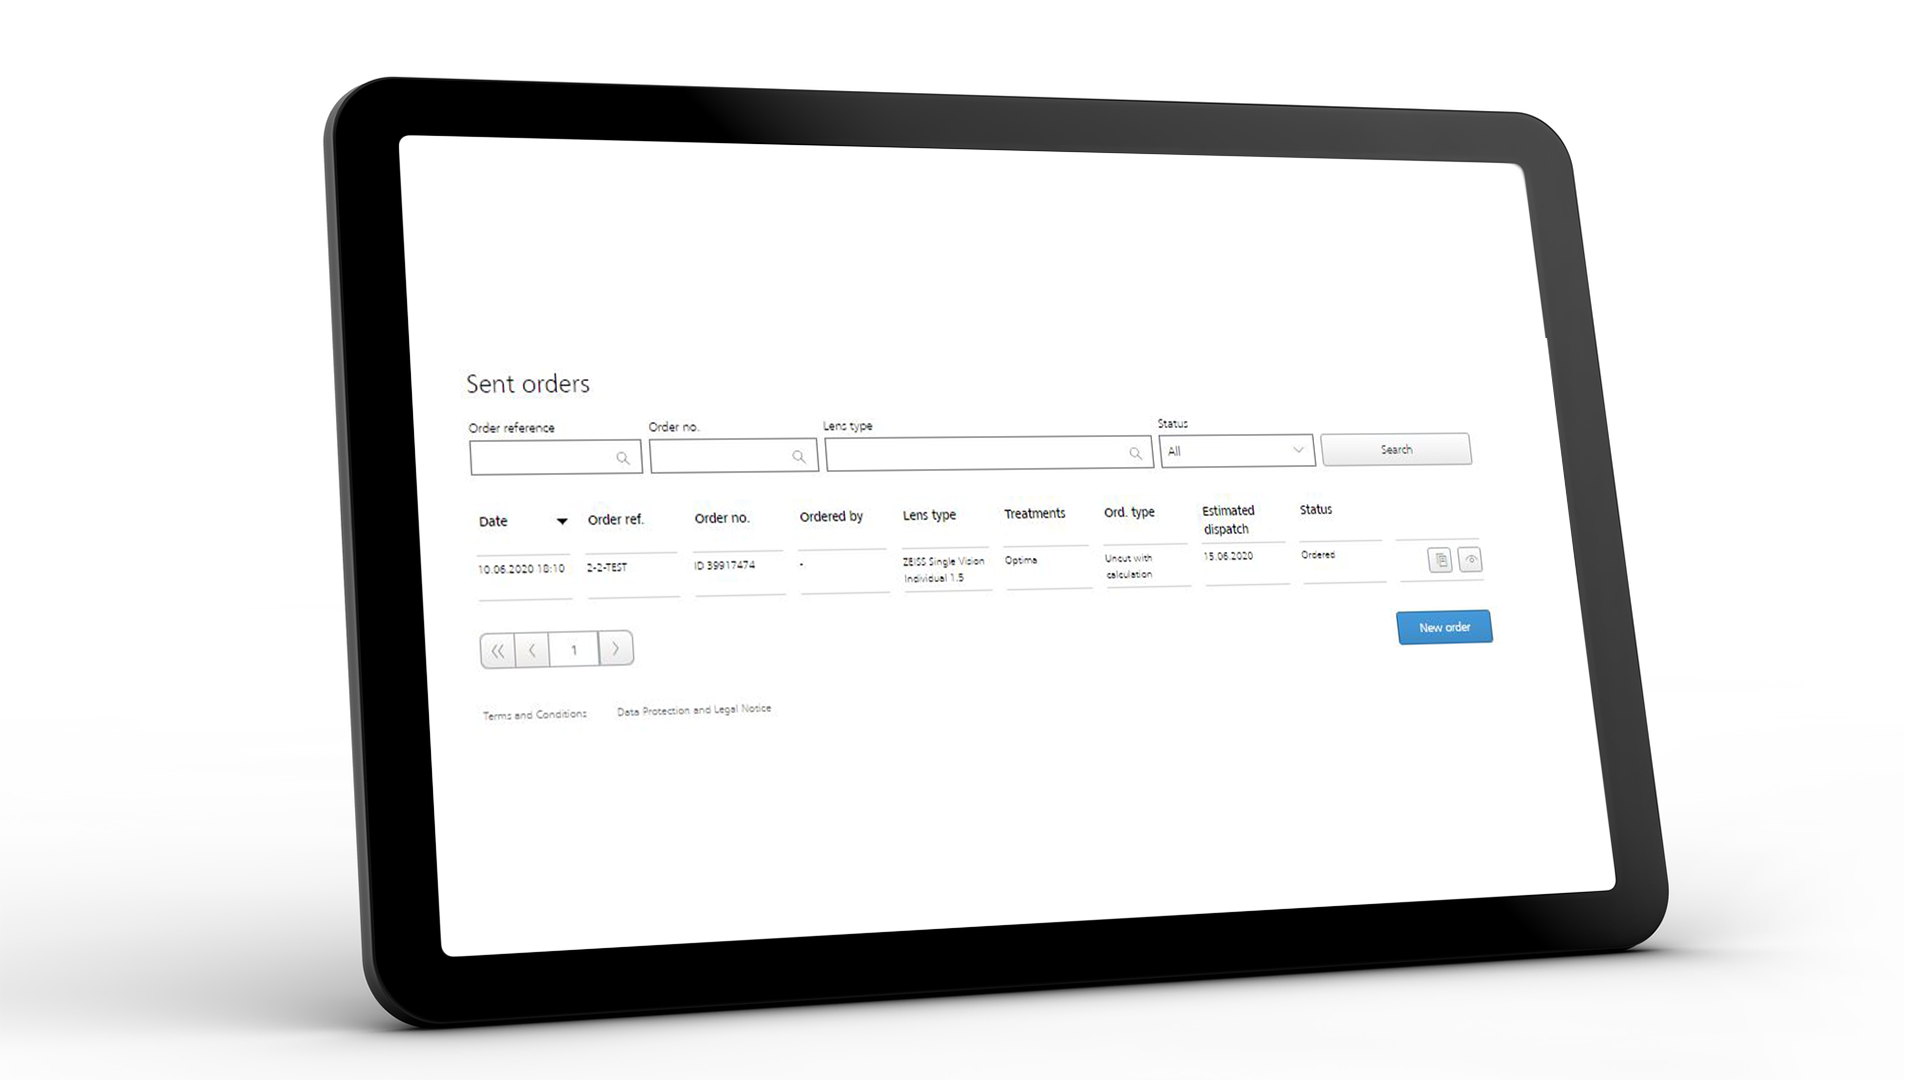 Ecranul tabletei care prezintă interfața ZEISS VISUSTORE pentru comenzi trimise 